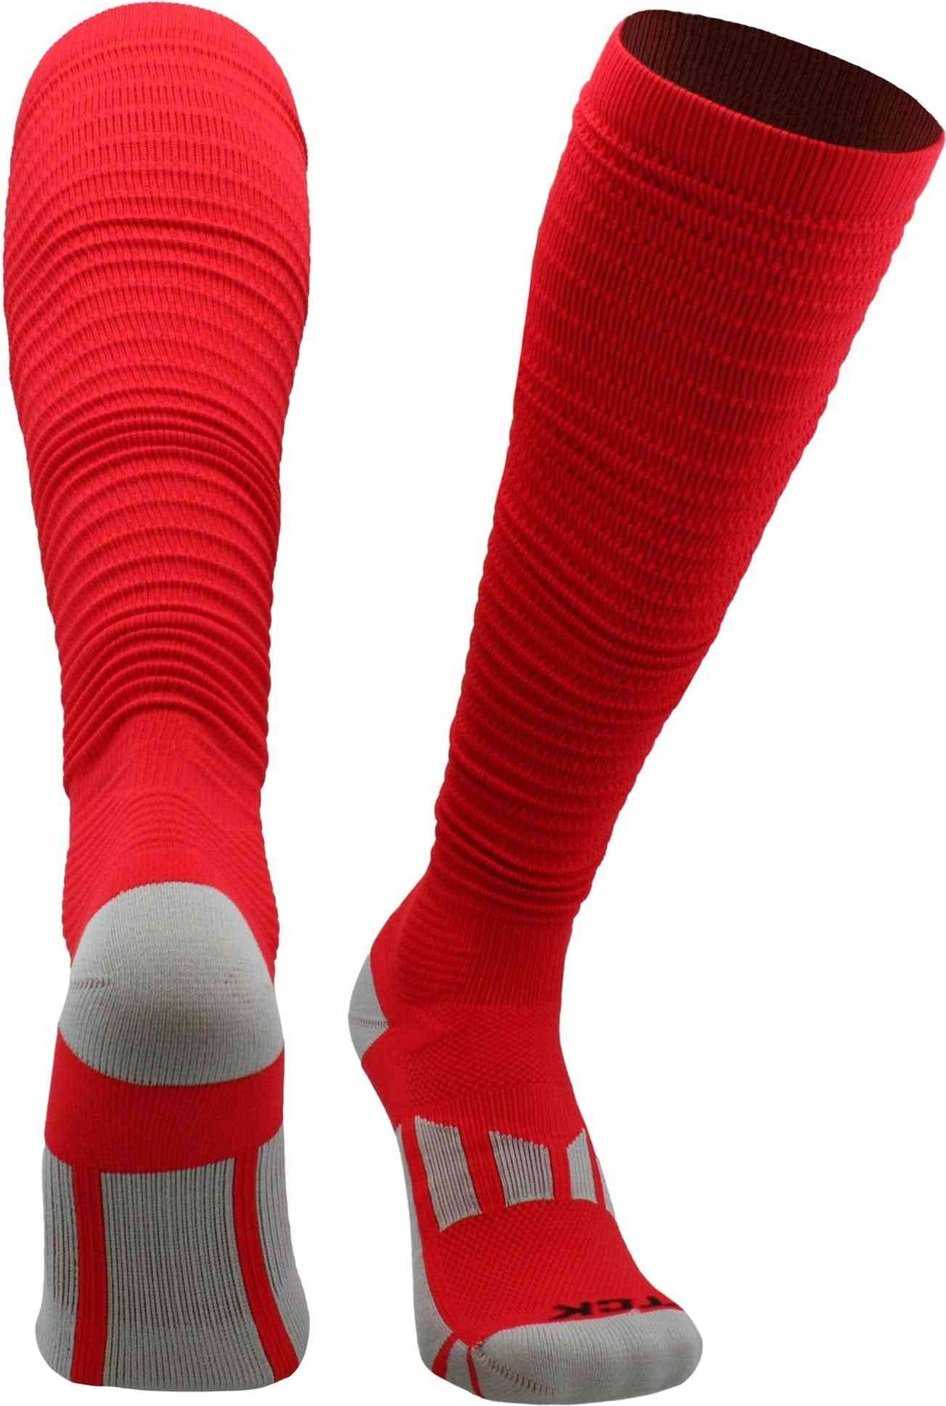 TCK Crunch Football Knee High Socks - Scarlet - HIT a Double - 1